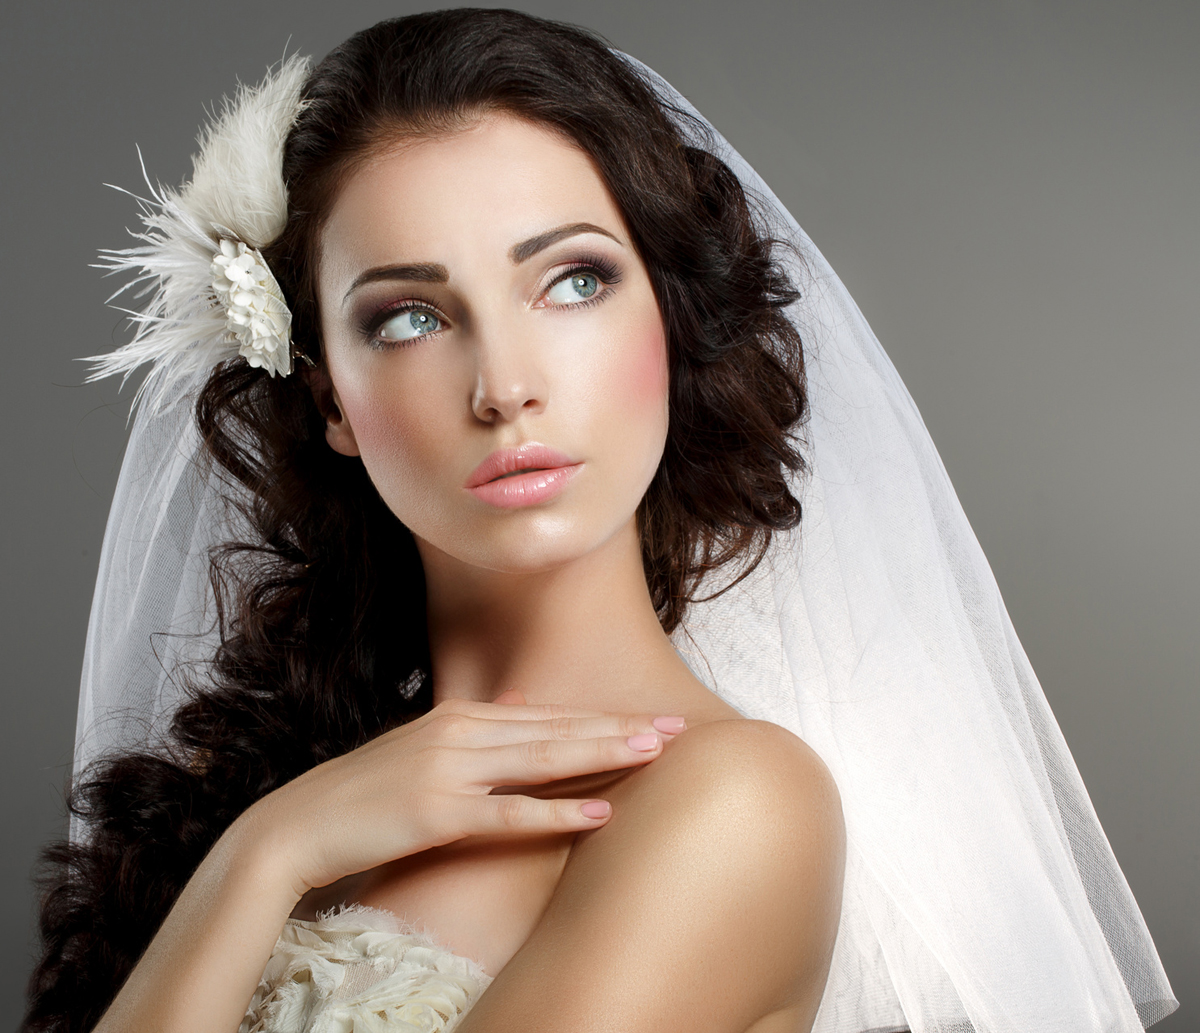 Démonstration Esthétique : Les maquillages mariées de l’Orient à l’Occident